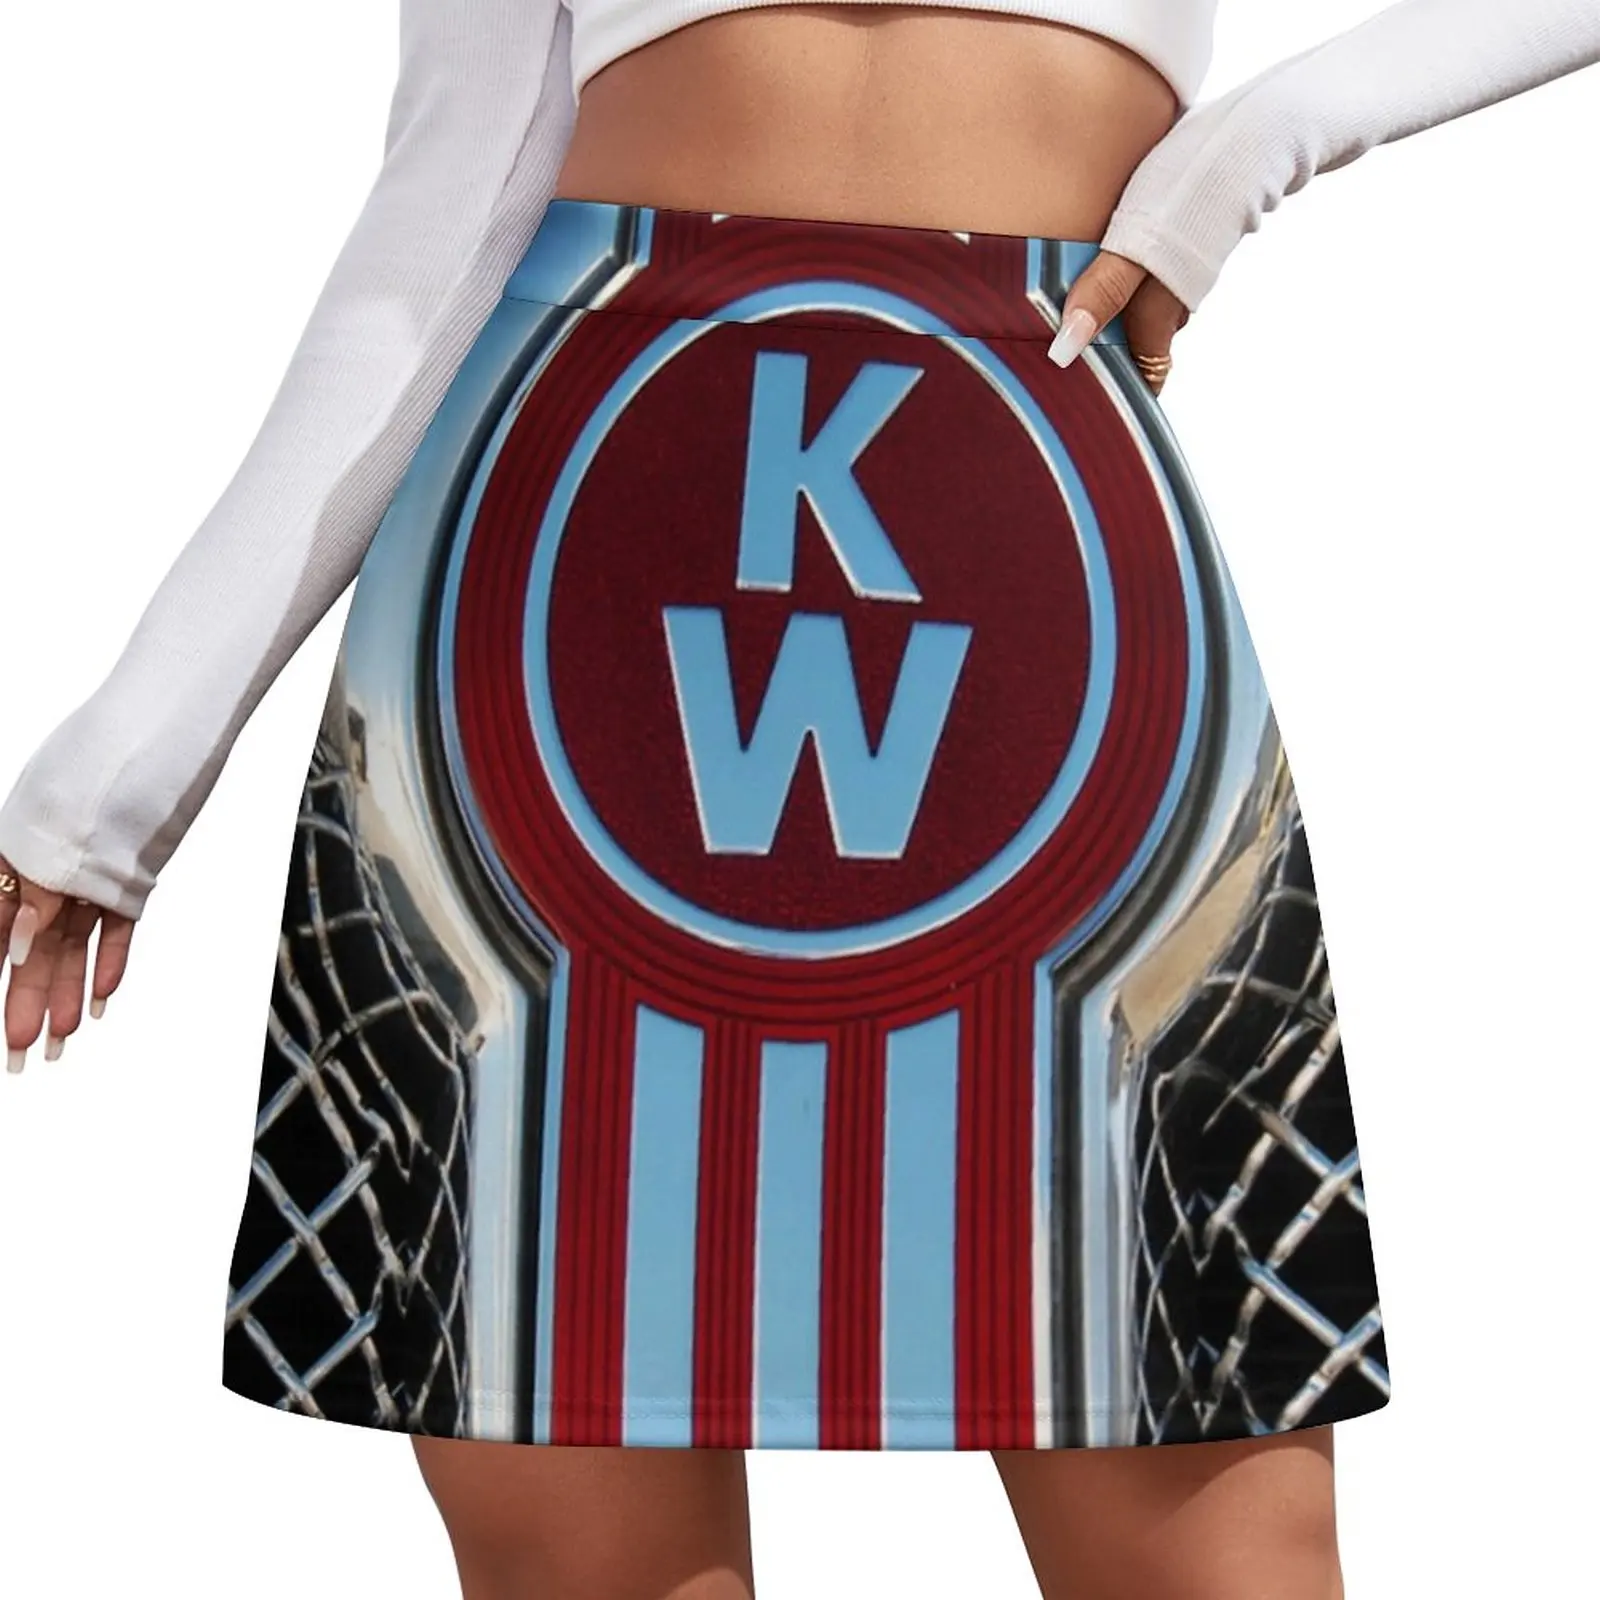 

Мини юбка-шорты Kenworth с эмблемами